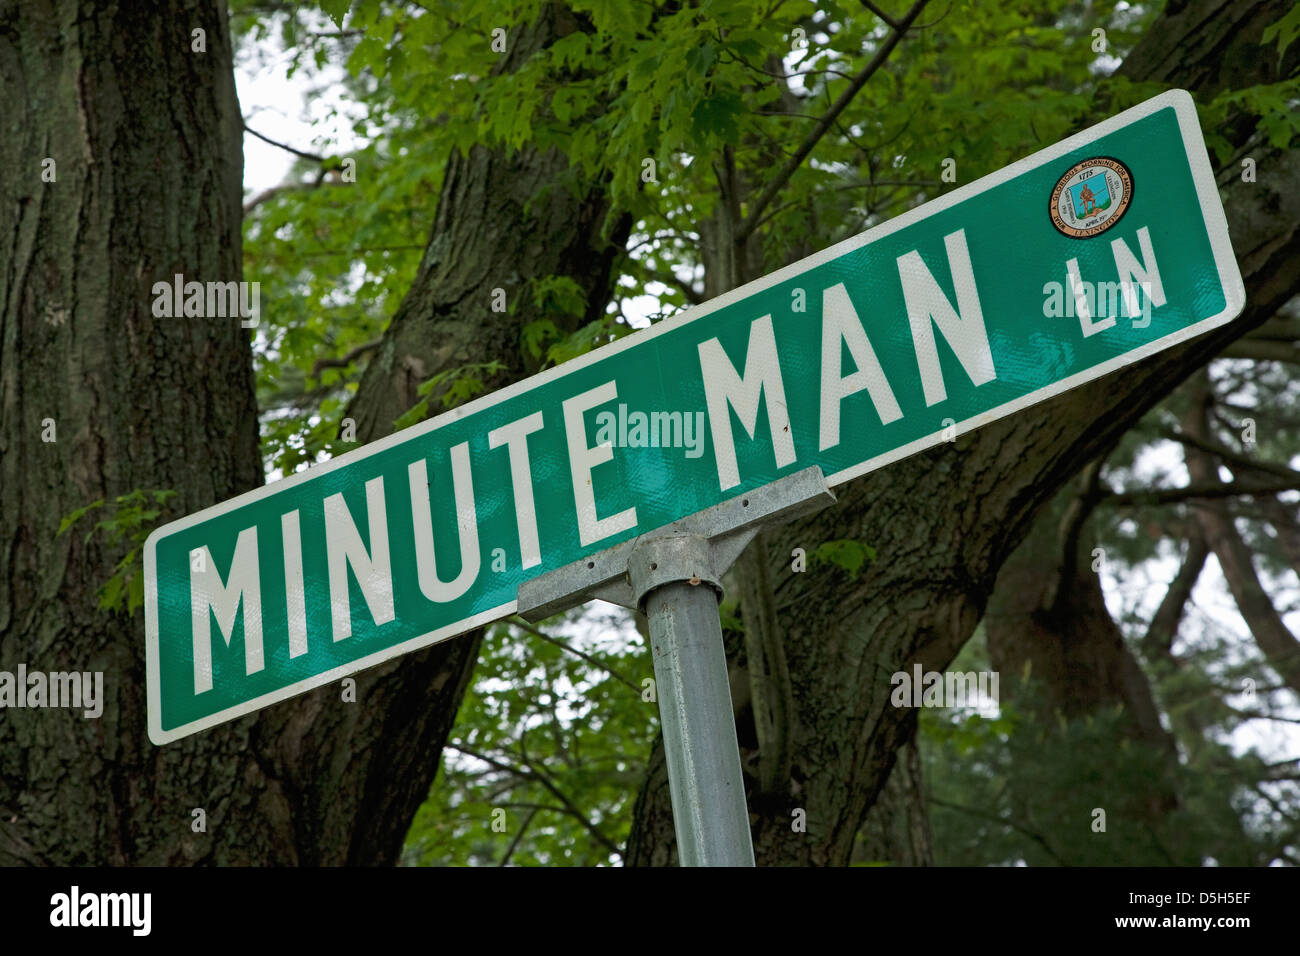 Minute Man Lane, al di fuori di Lexington MA a simboleggiare la Minute Man i soldati della guerra rivoluzionaria, 1776, MA Foto Stock